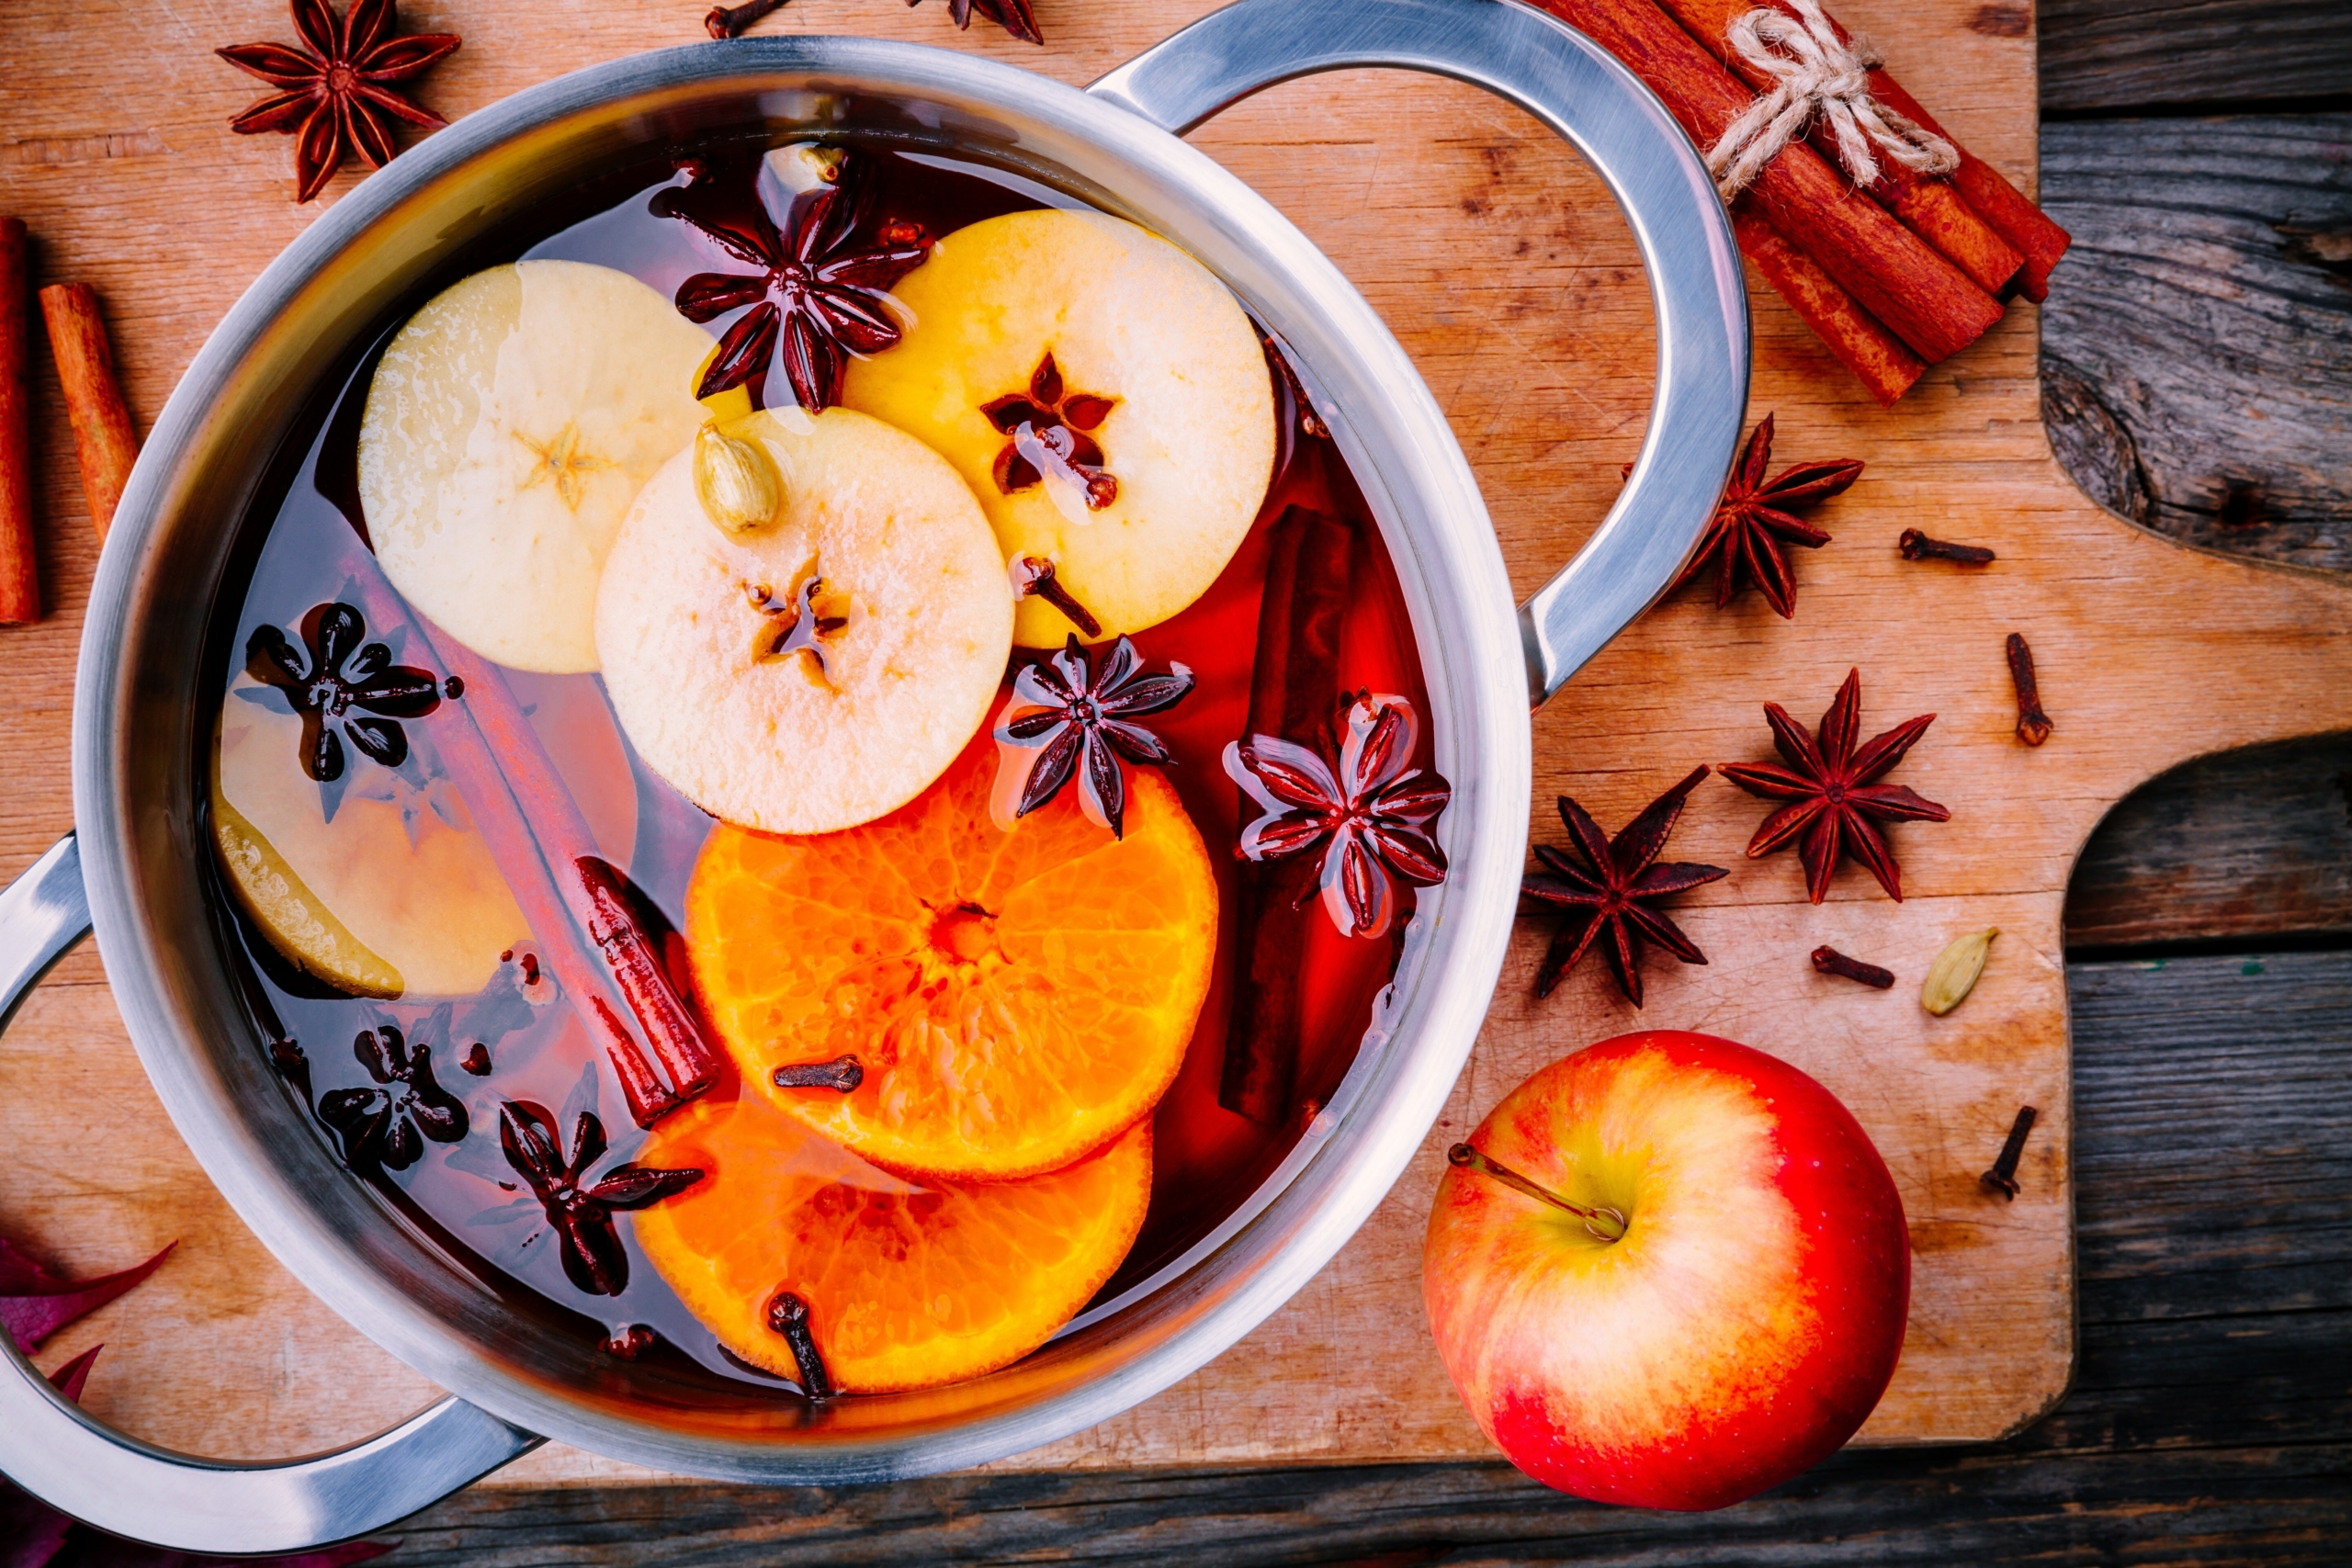 Rượu ngâm nóng với cam quýt, táo, quế, đinh hương, và hoa hồi. (Ảnh: nblx/Shutterstock)